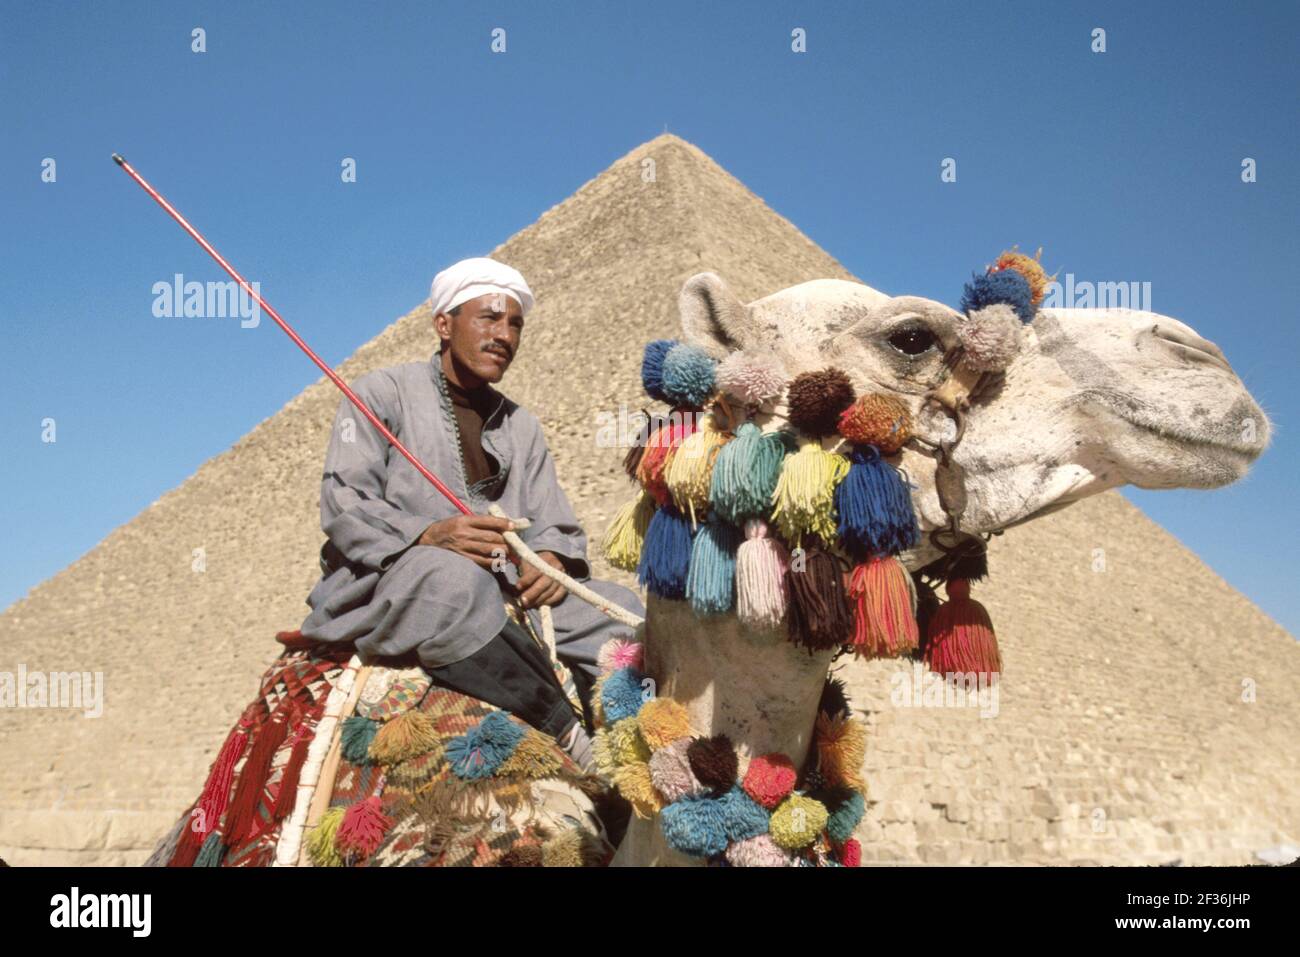 Cairo Egipto Egipto Giza egipcio Distrito Gran Pirámide de Kheops, construido 2600 a.C. Siete Maravillas del Mundo, hombre musulmán jinete camello que ofrece paseos, Foto de stock